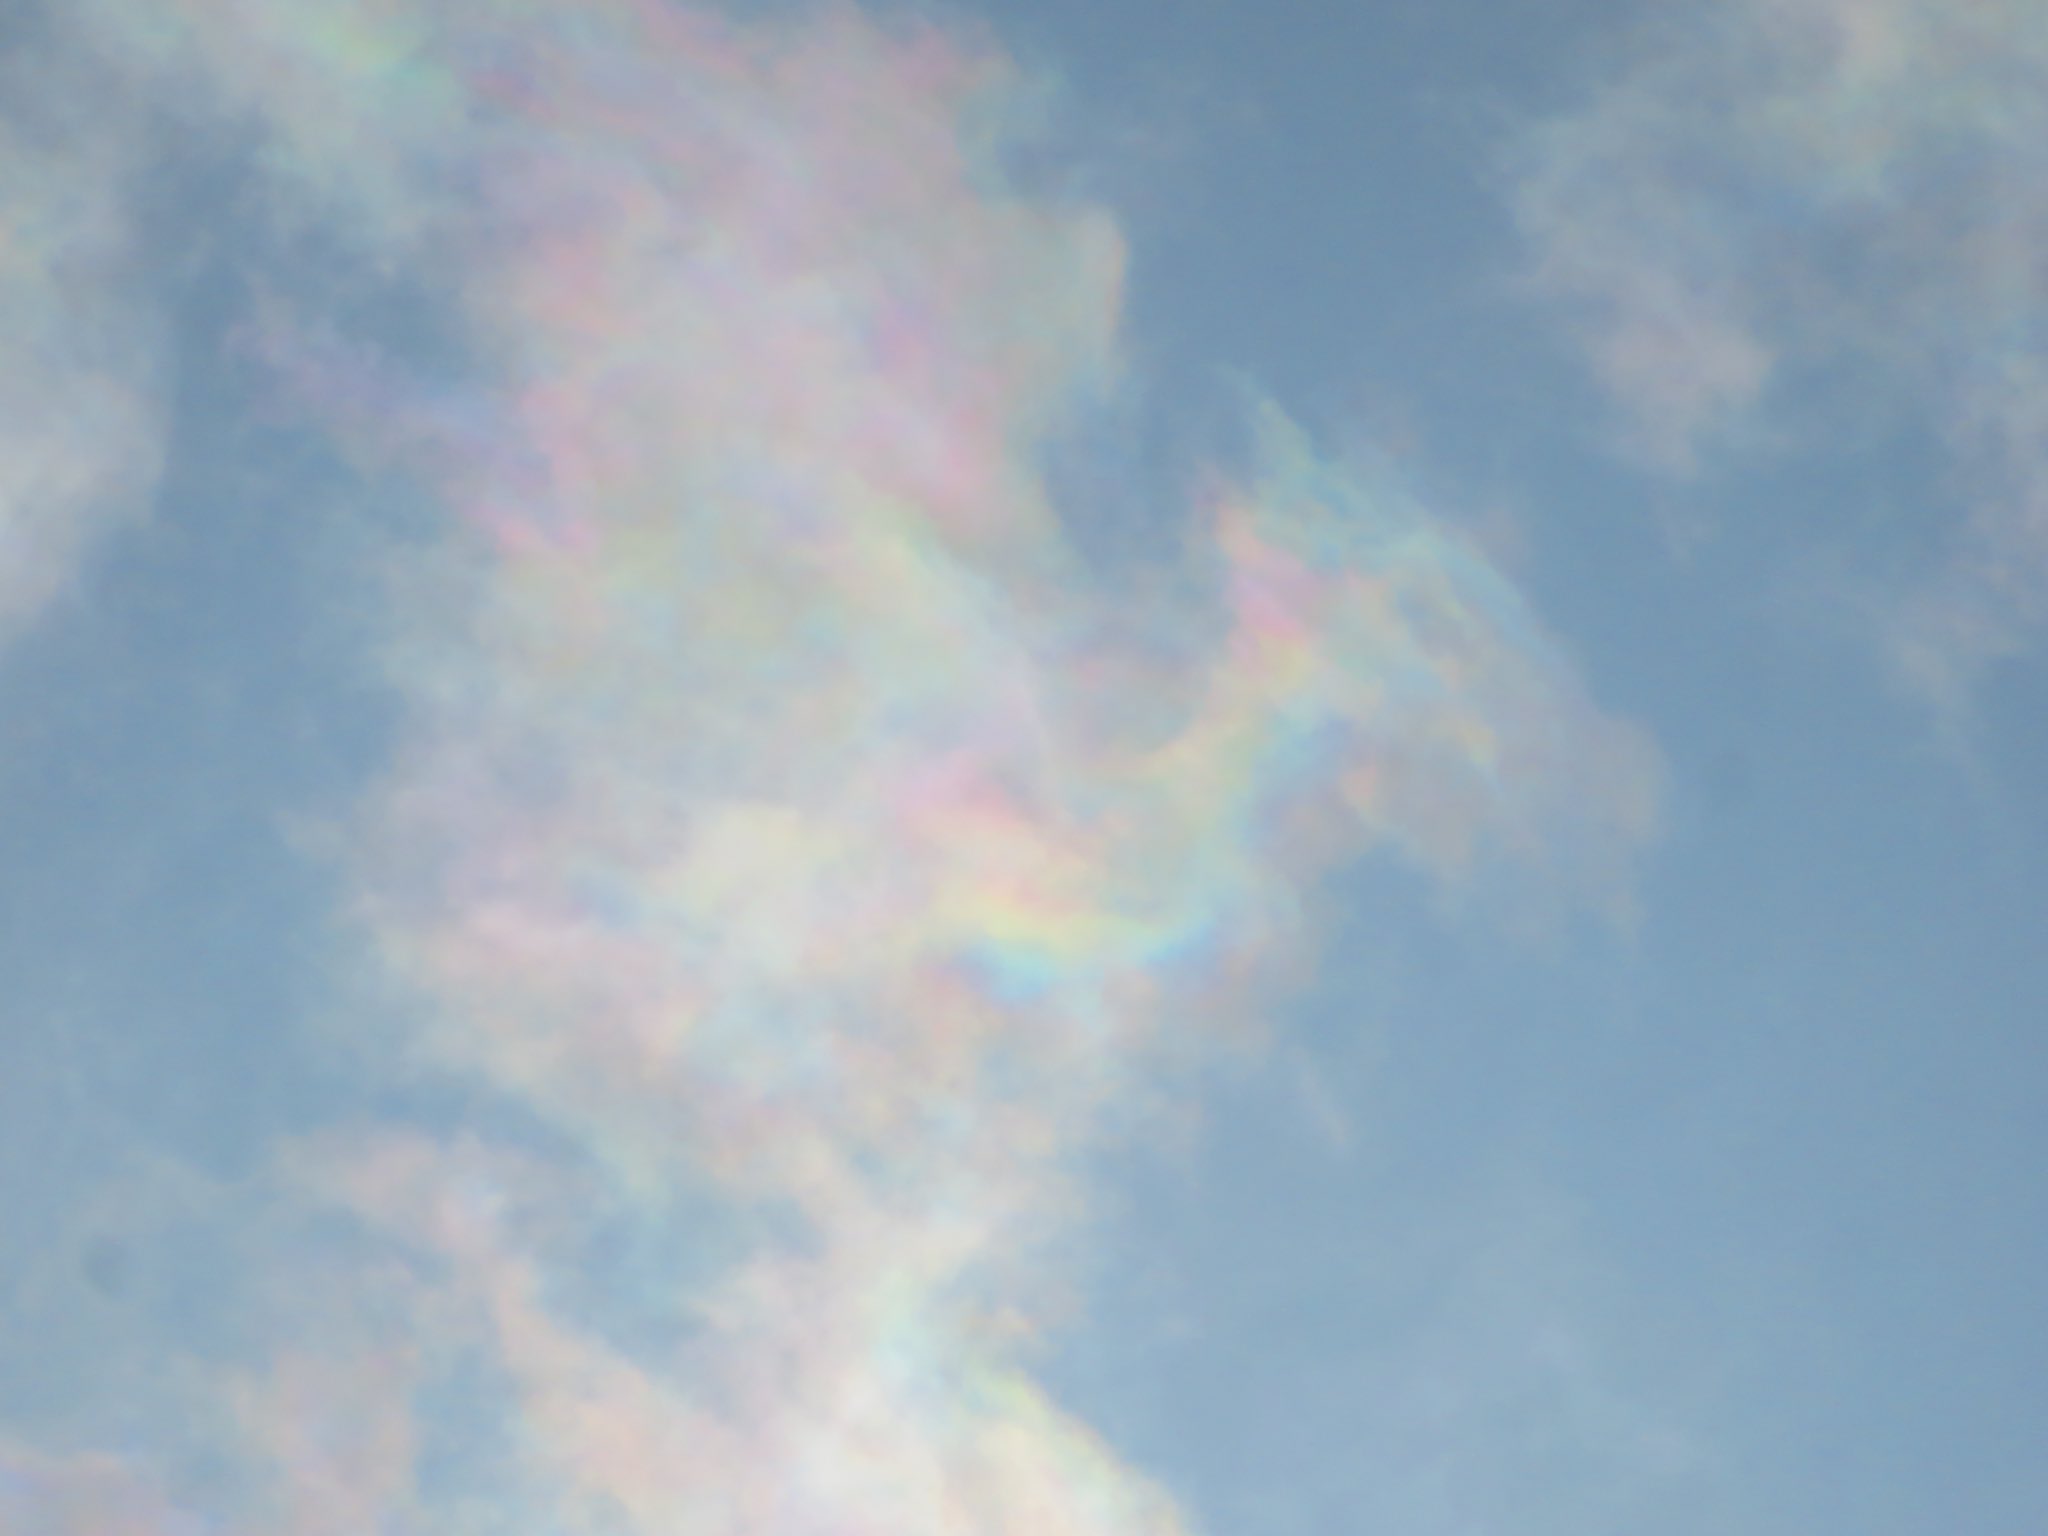 荒木健太郎 淡い虹色の彩雲に出会いました T Co Iw7v12hgo0 Twitter